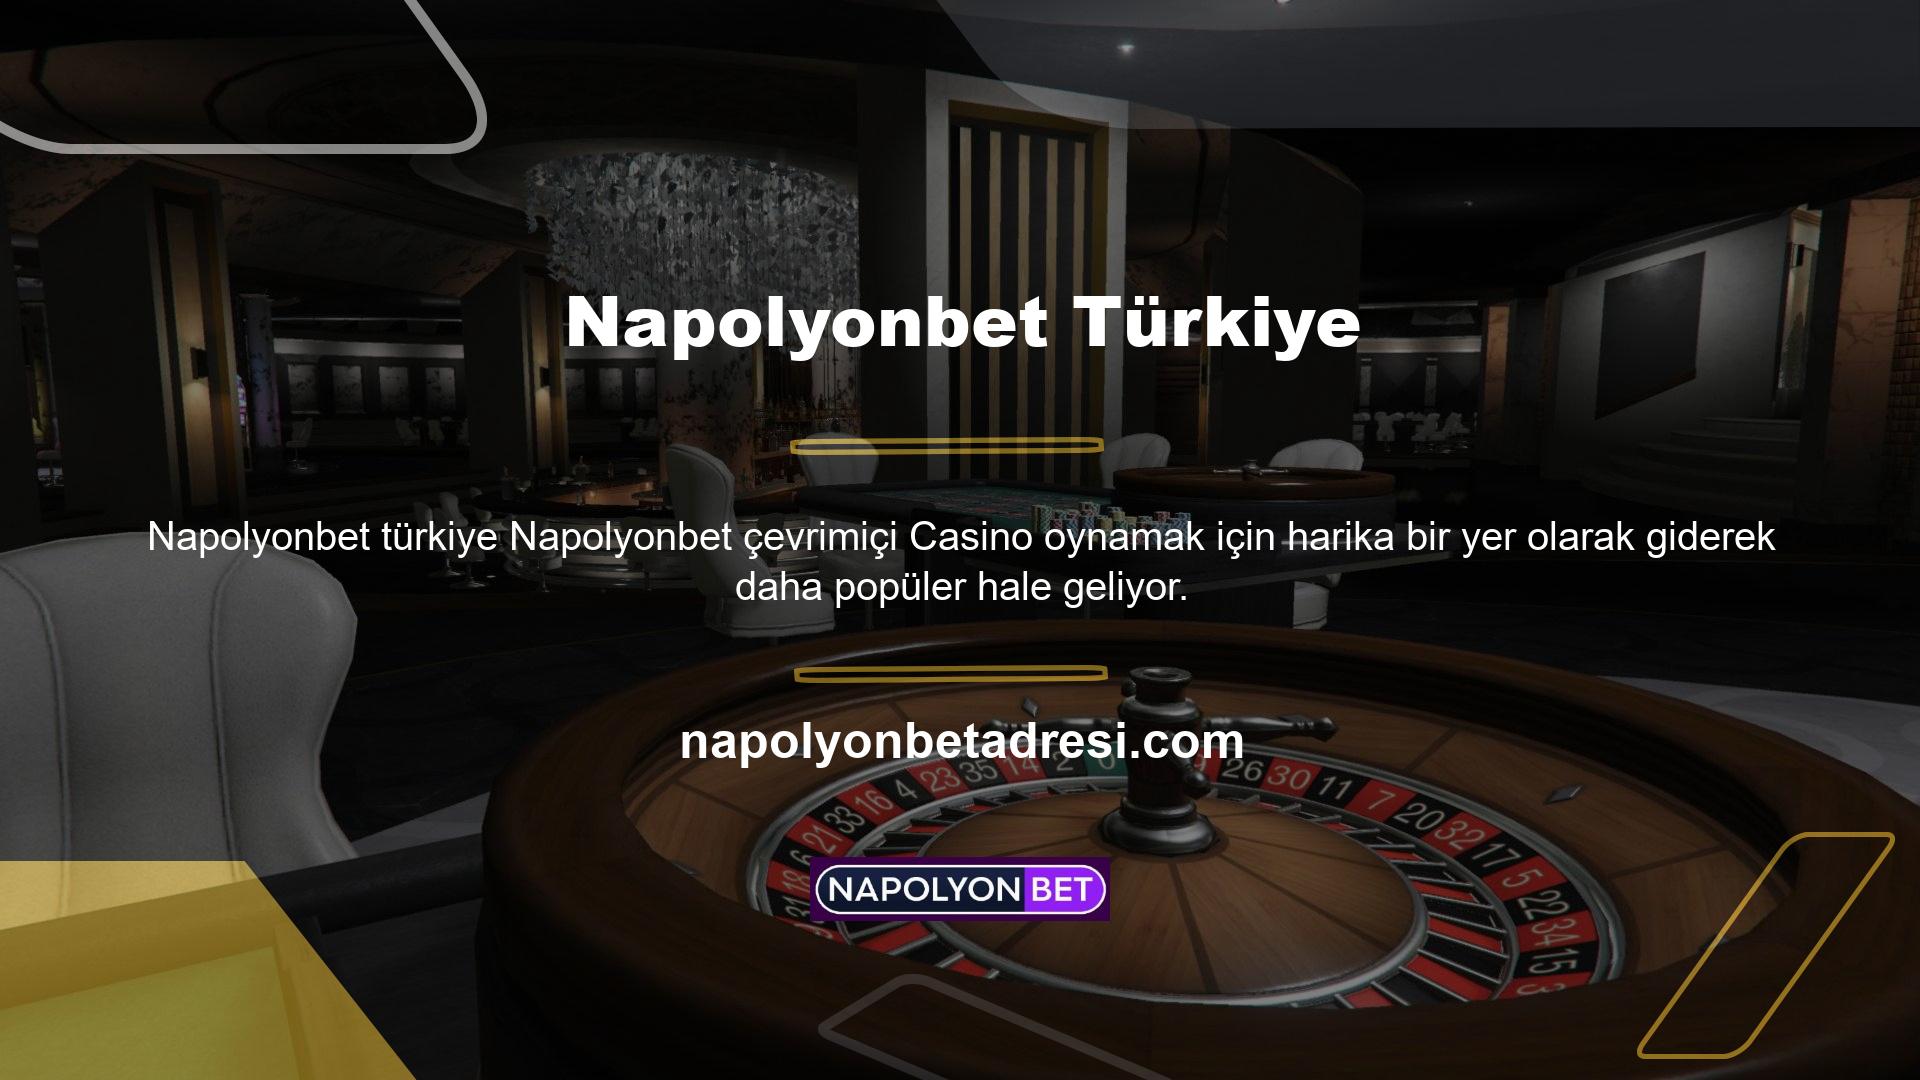 Aslında Napolyonbet web sitesi, çevrimiçi Casino meraklılarının ve çevrimiçi Casinoların artan ilgisi nedeniyle popülerliğinin zirvesine ulaşmasıyla, lansmanından bu yana önemli bir etki yarattı